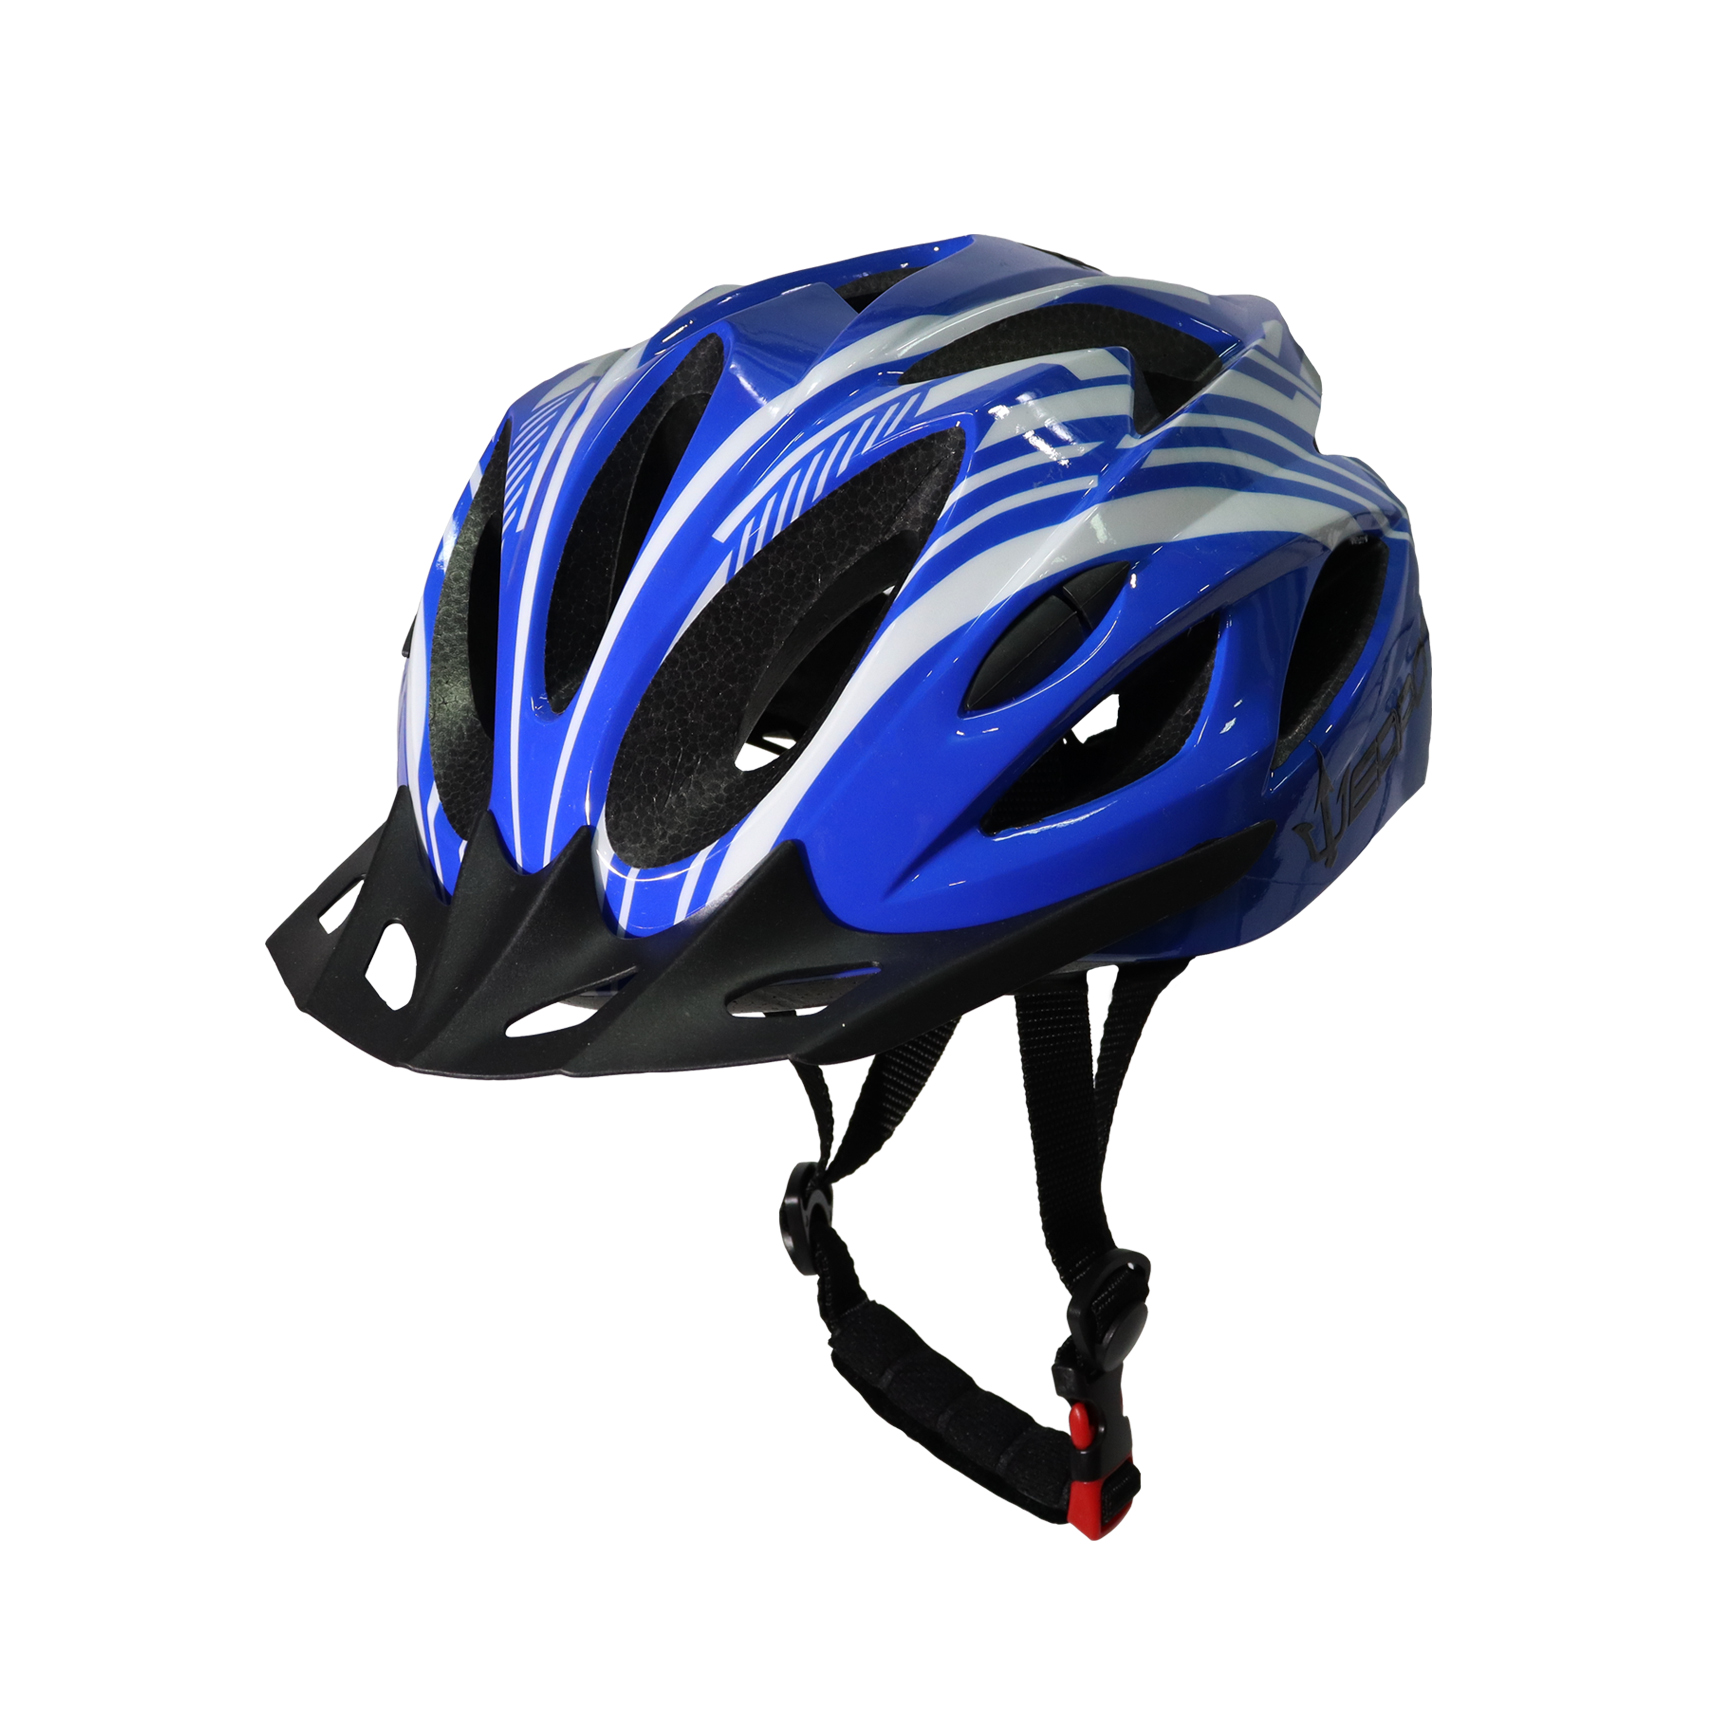 Ace Helmet – Weapon Bike